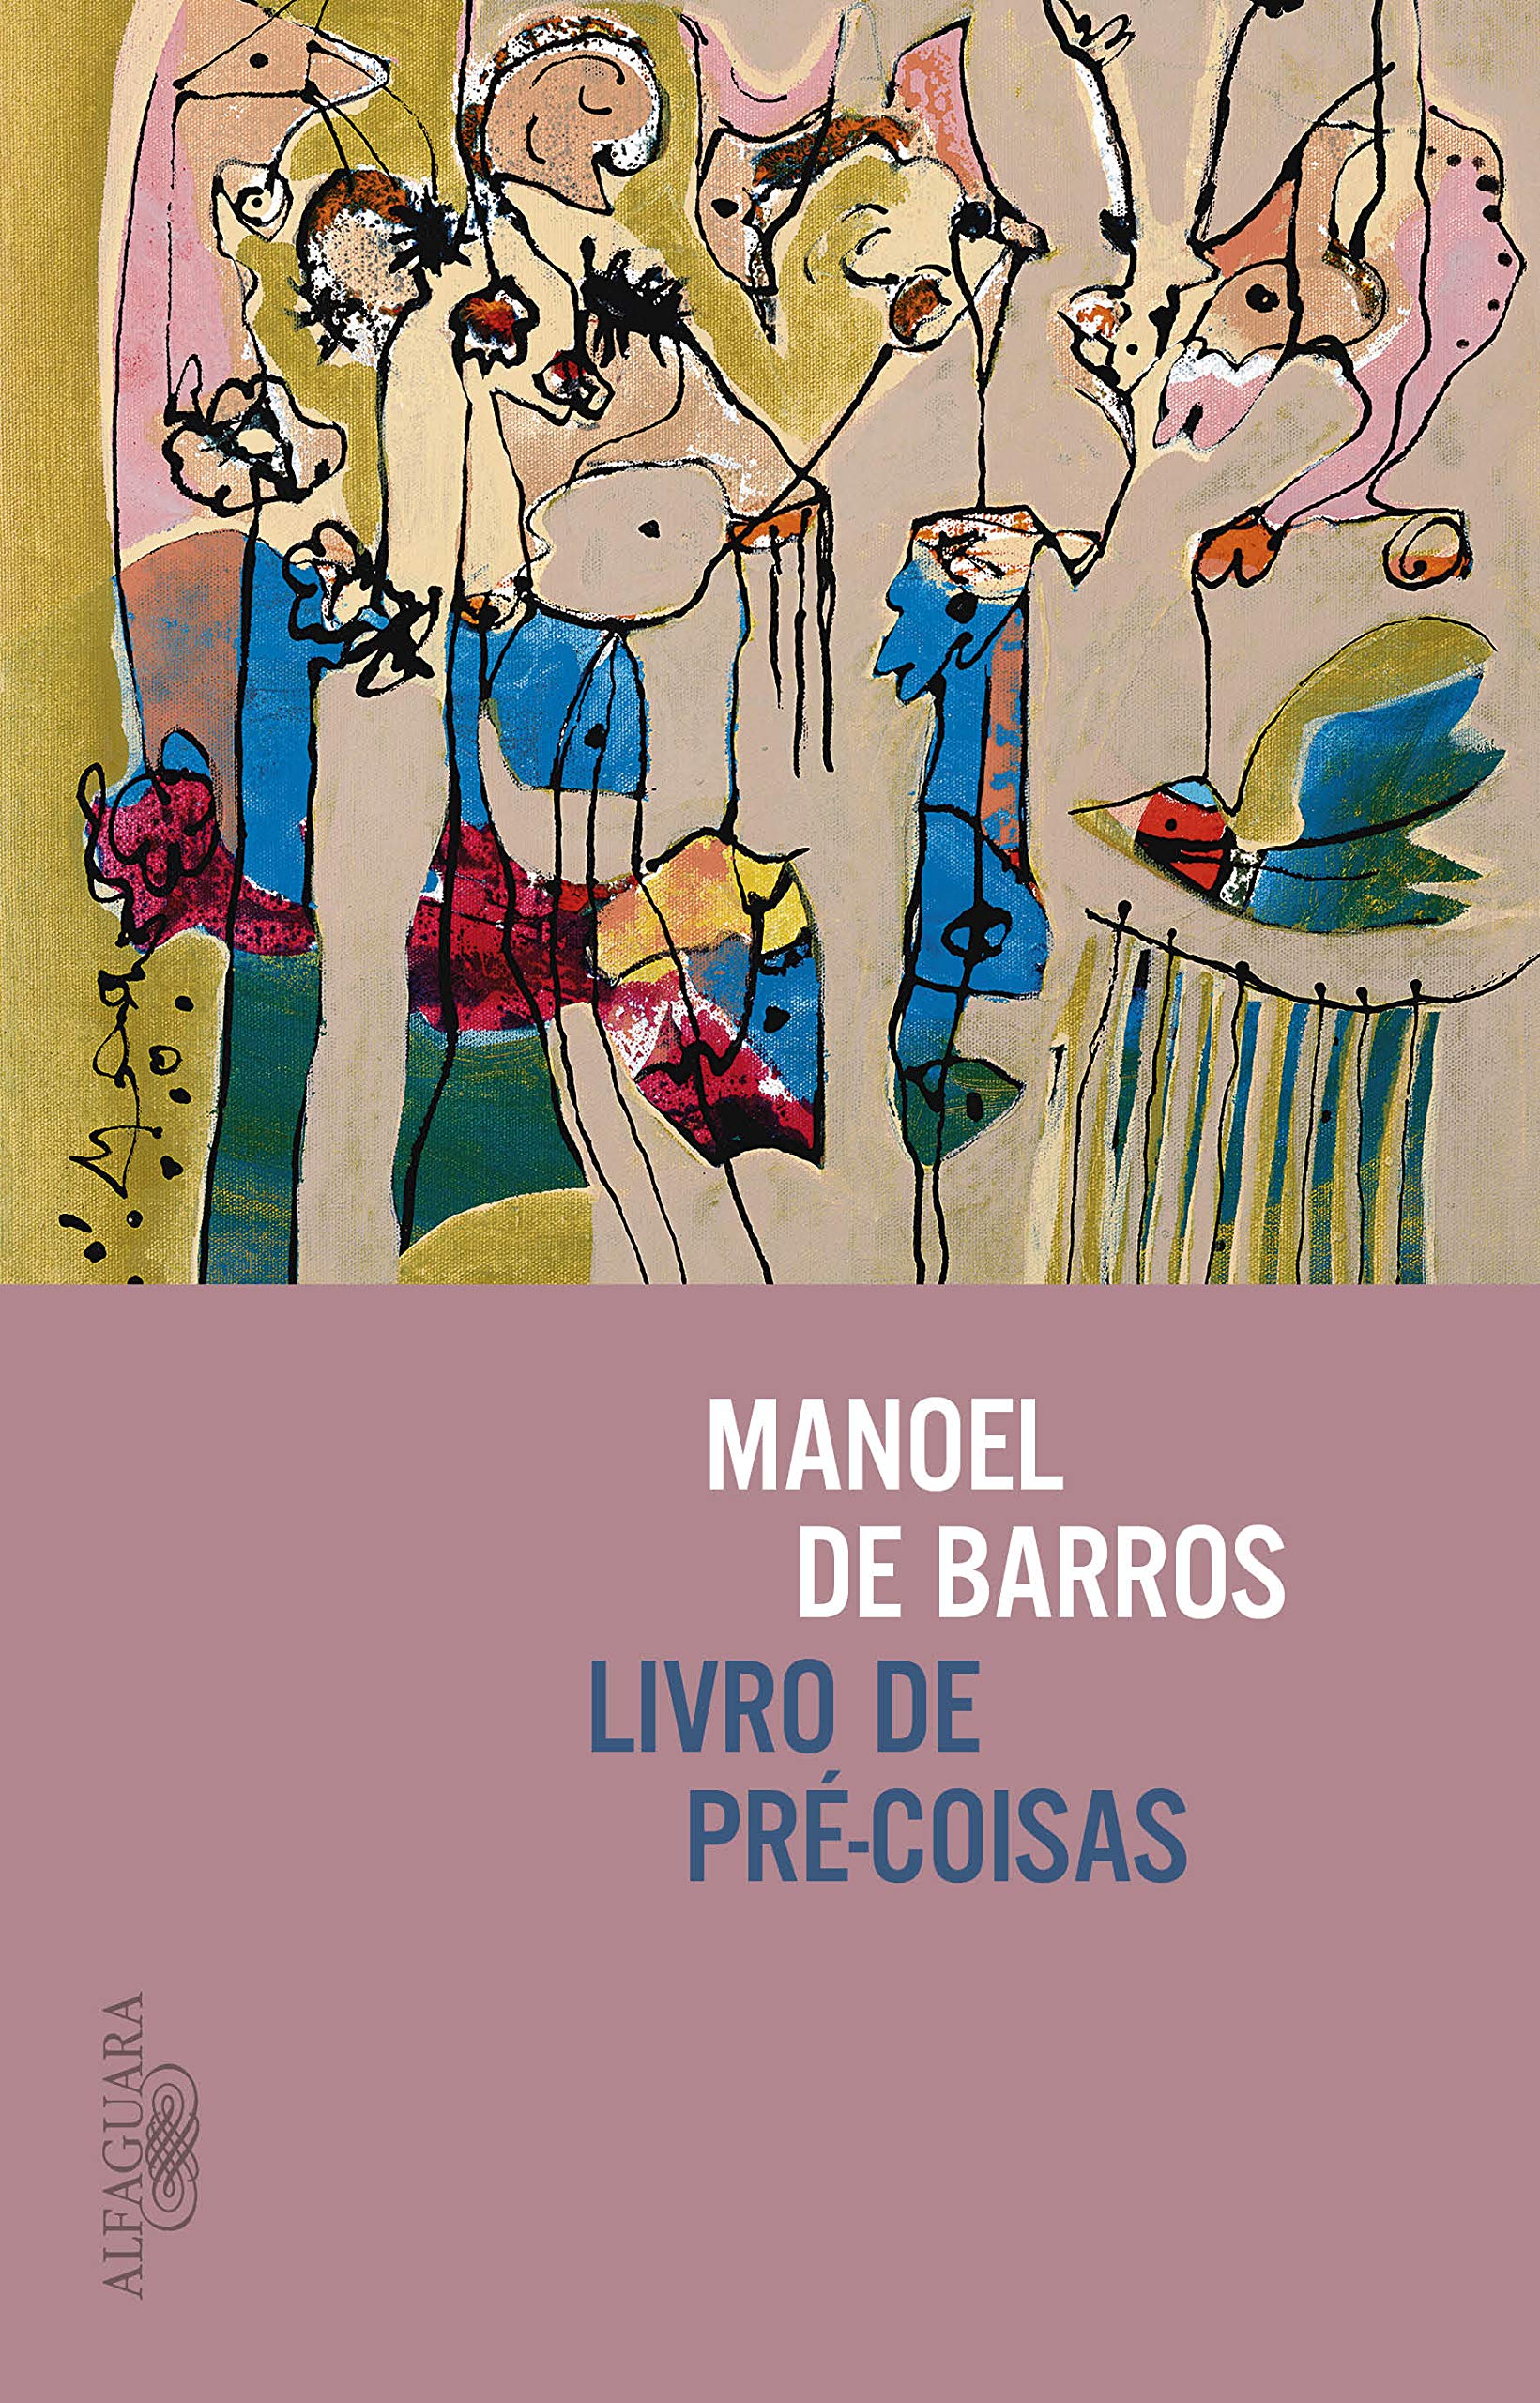 "O Livro de Pré-coisas" celebra a conexão entre seres e ambiente, destacando a natureza como matéria-prima da poesia de Manoel de Barros.